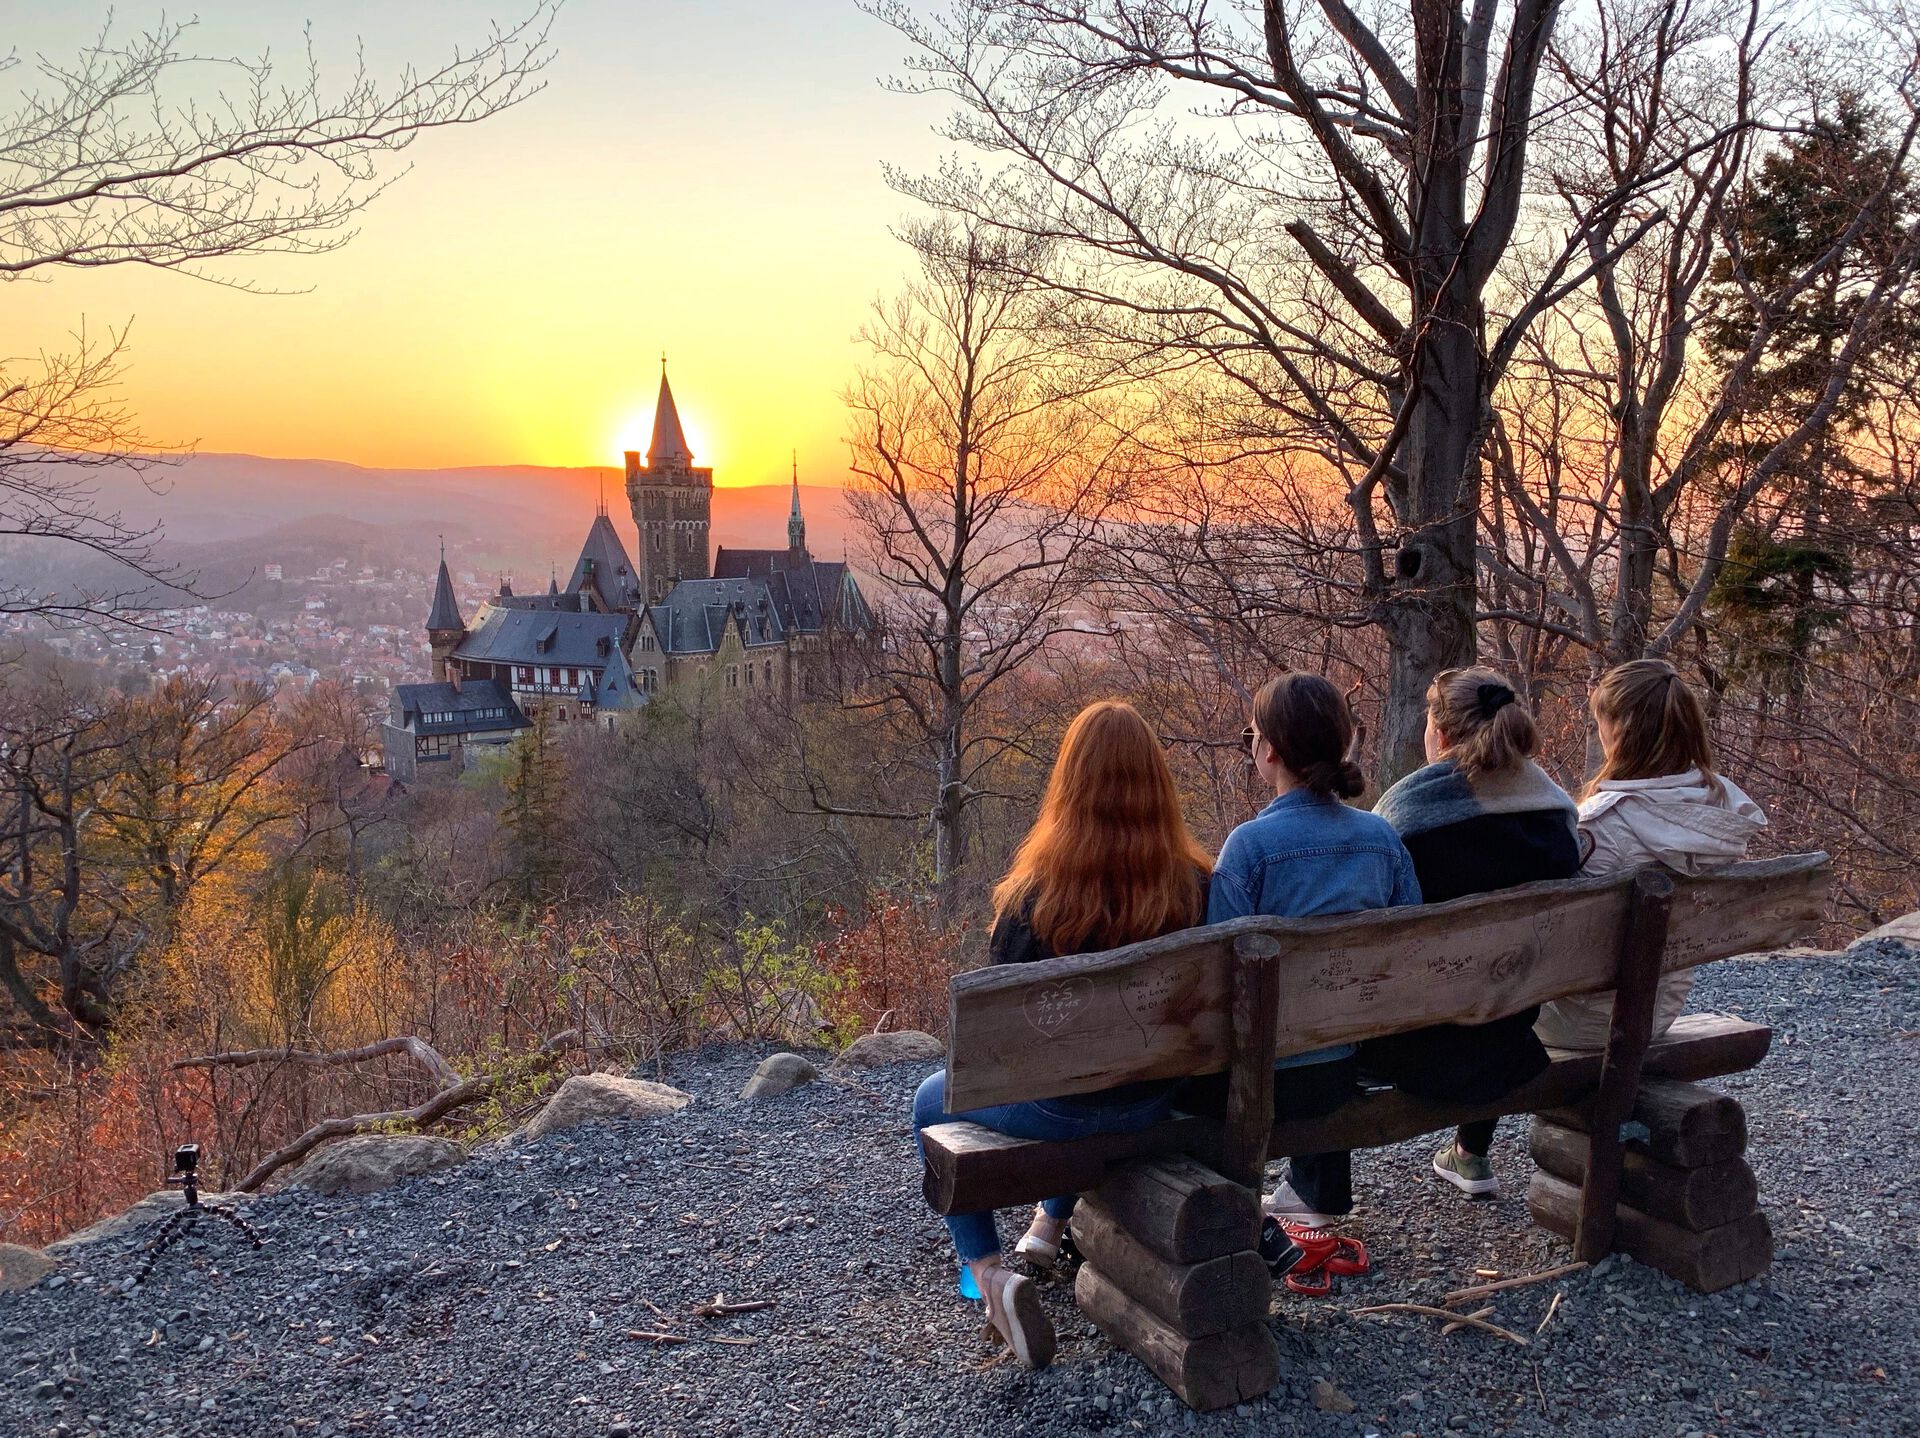 Fire studenter sitter på en benk og ser på utsikten over et slott i solnedgang.